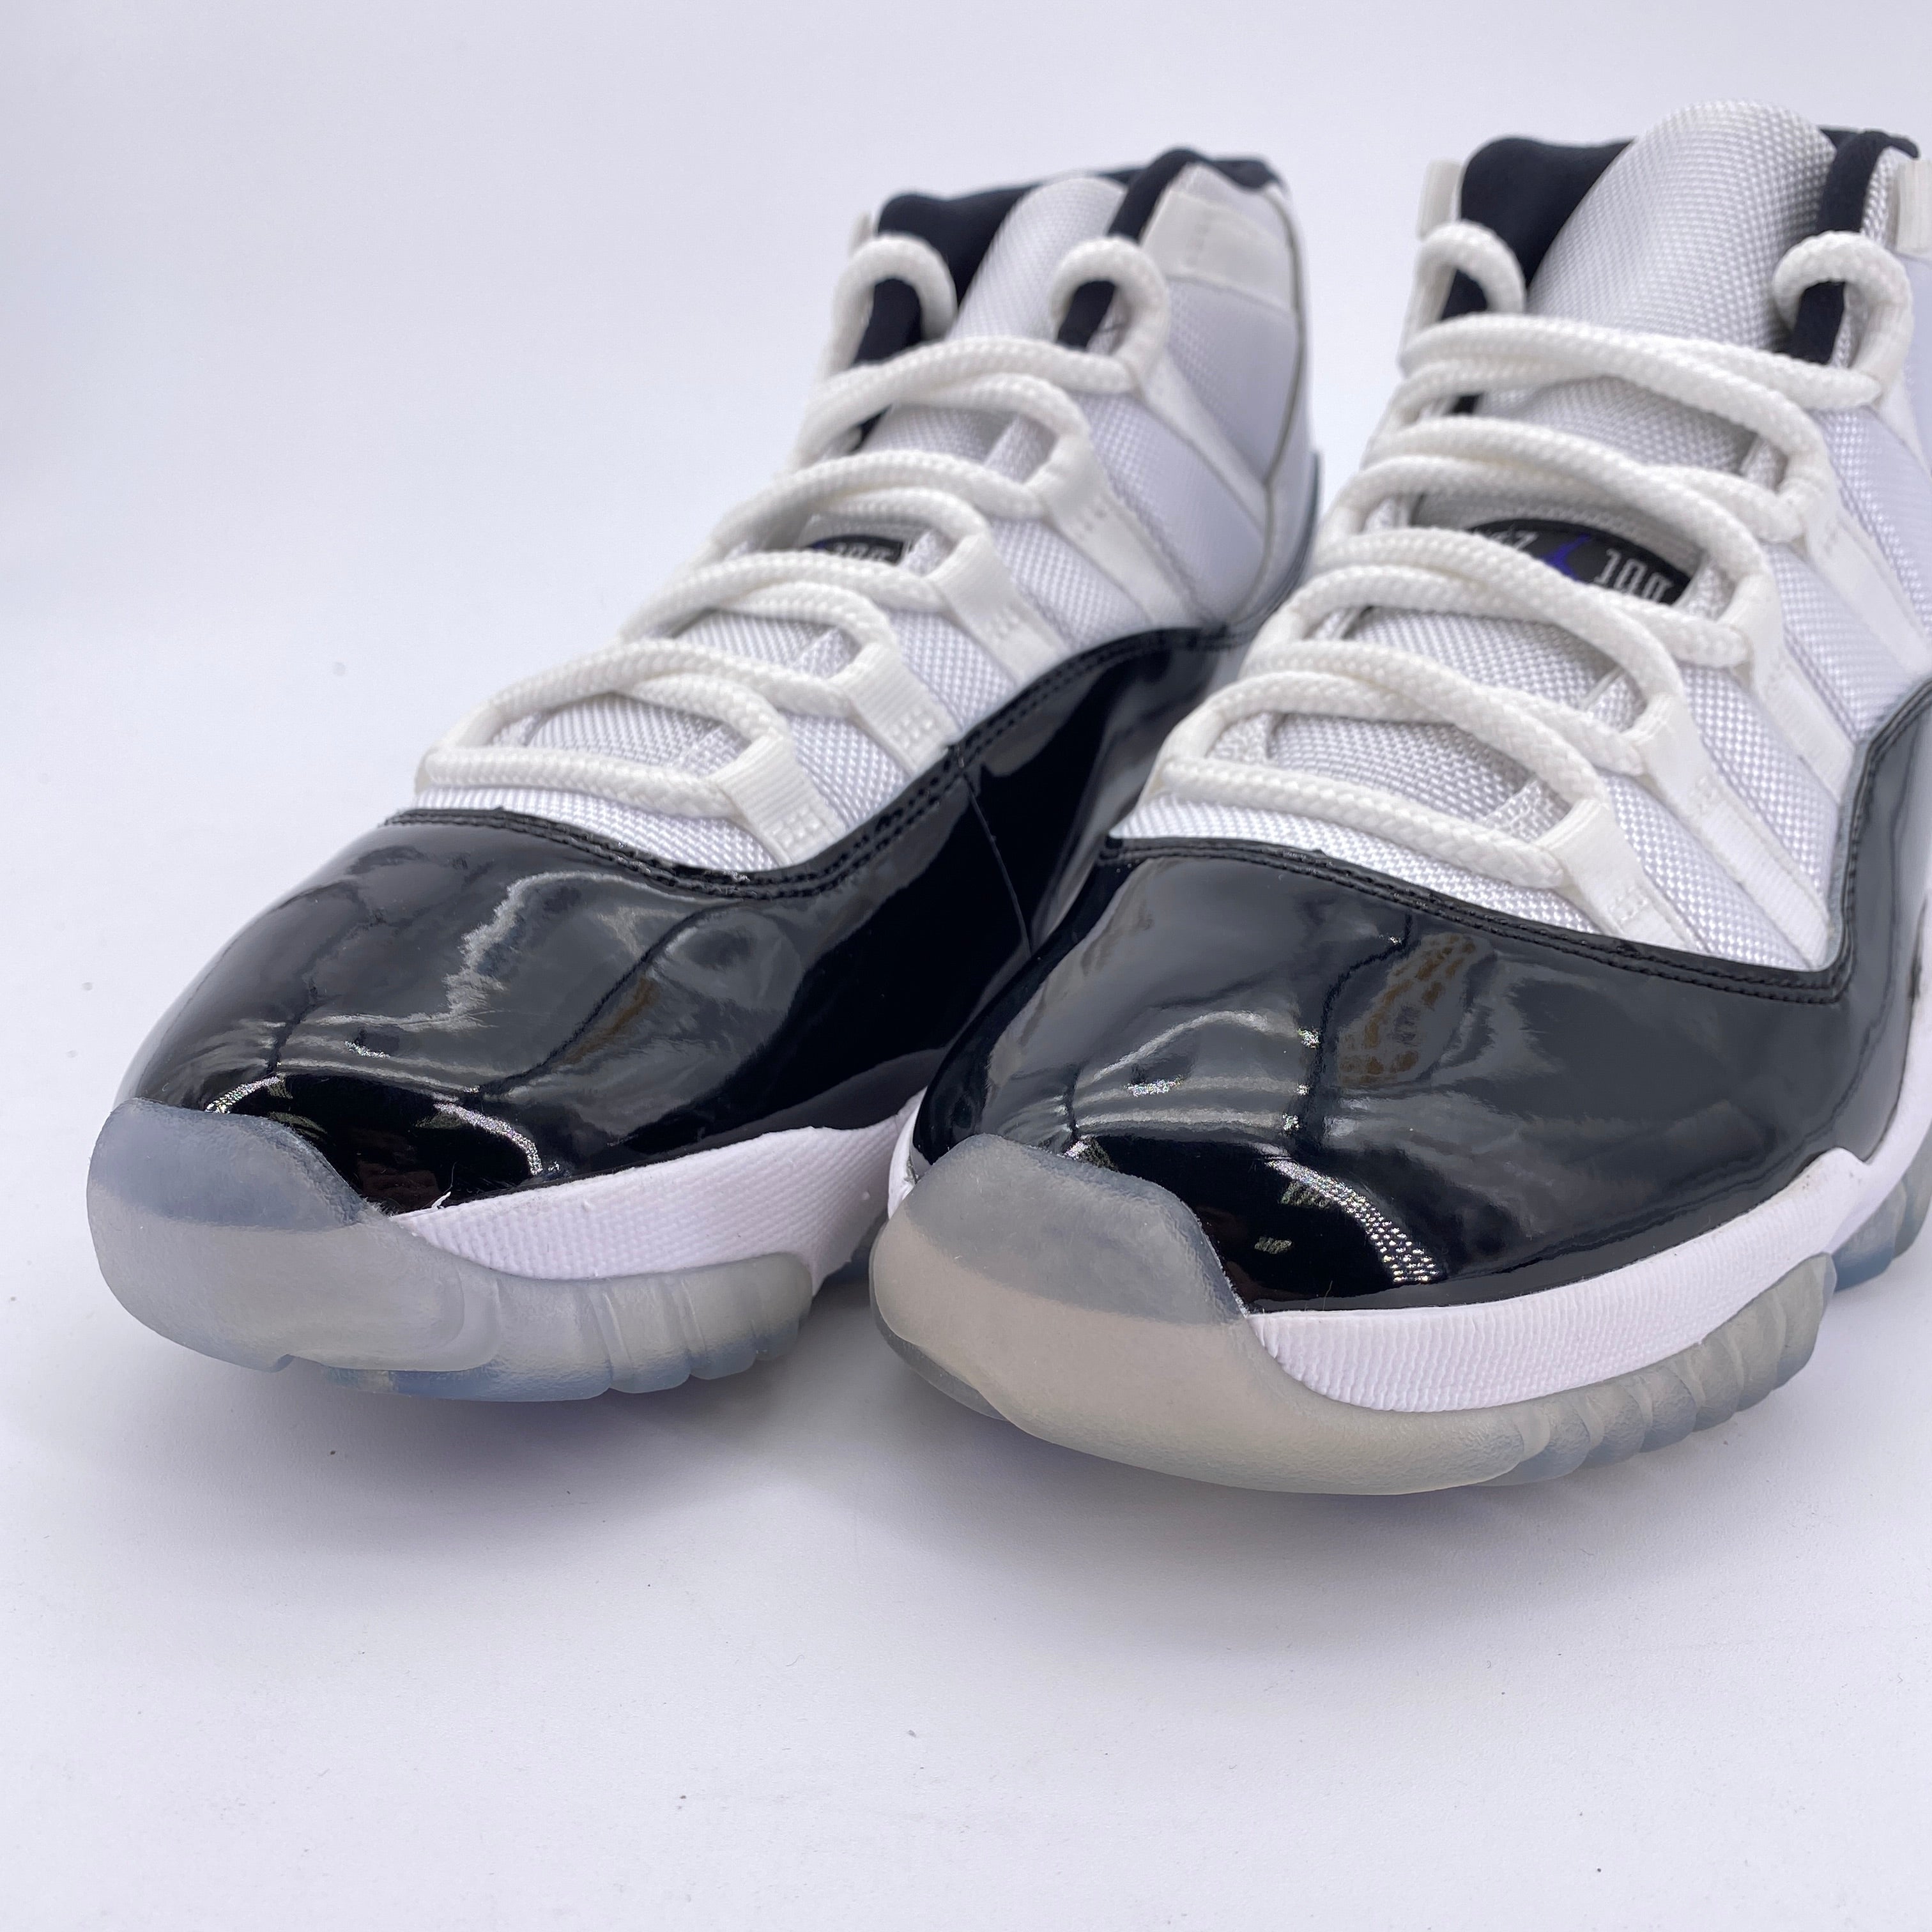 Air Jordan 11 Retro &quot;Concord&quot; 2018 New (Cond) Size 8.5